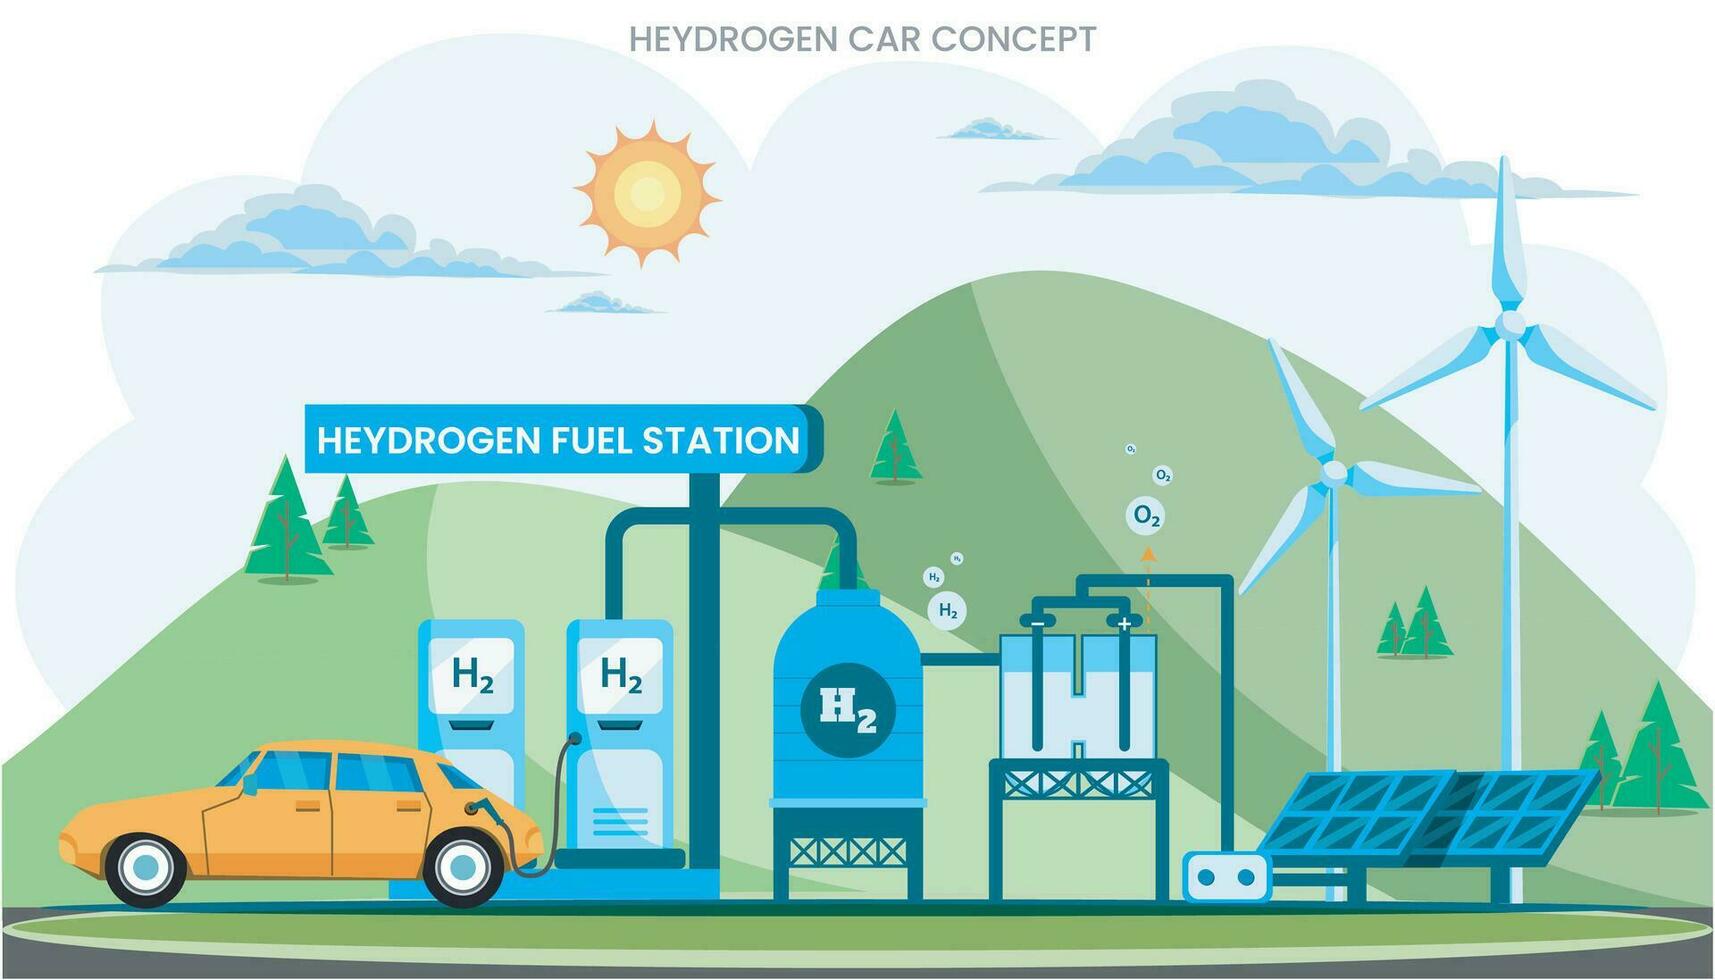 framtida väte bil är en rena, miljövänlig transport använder sig av väte bränsle celler, emitterande endast vatten ånga vektor